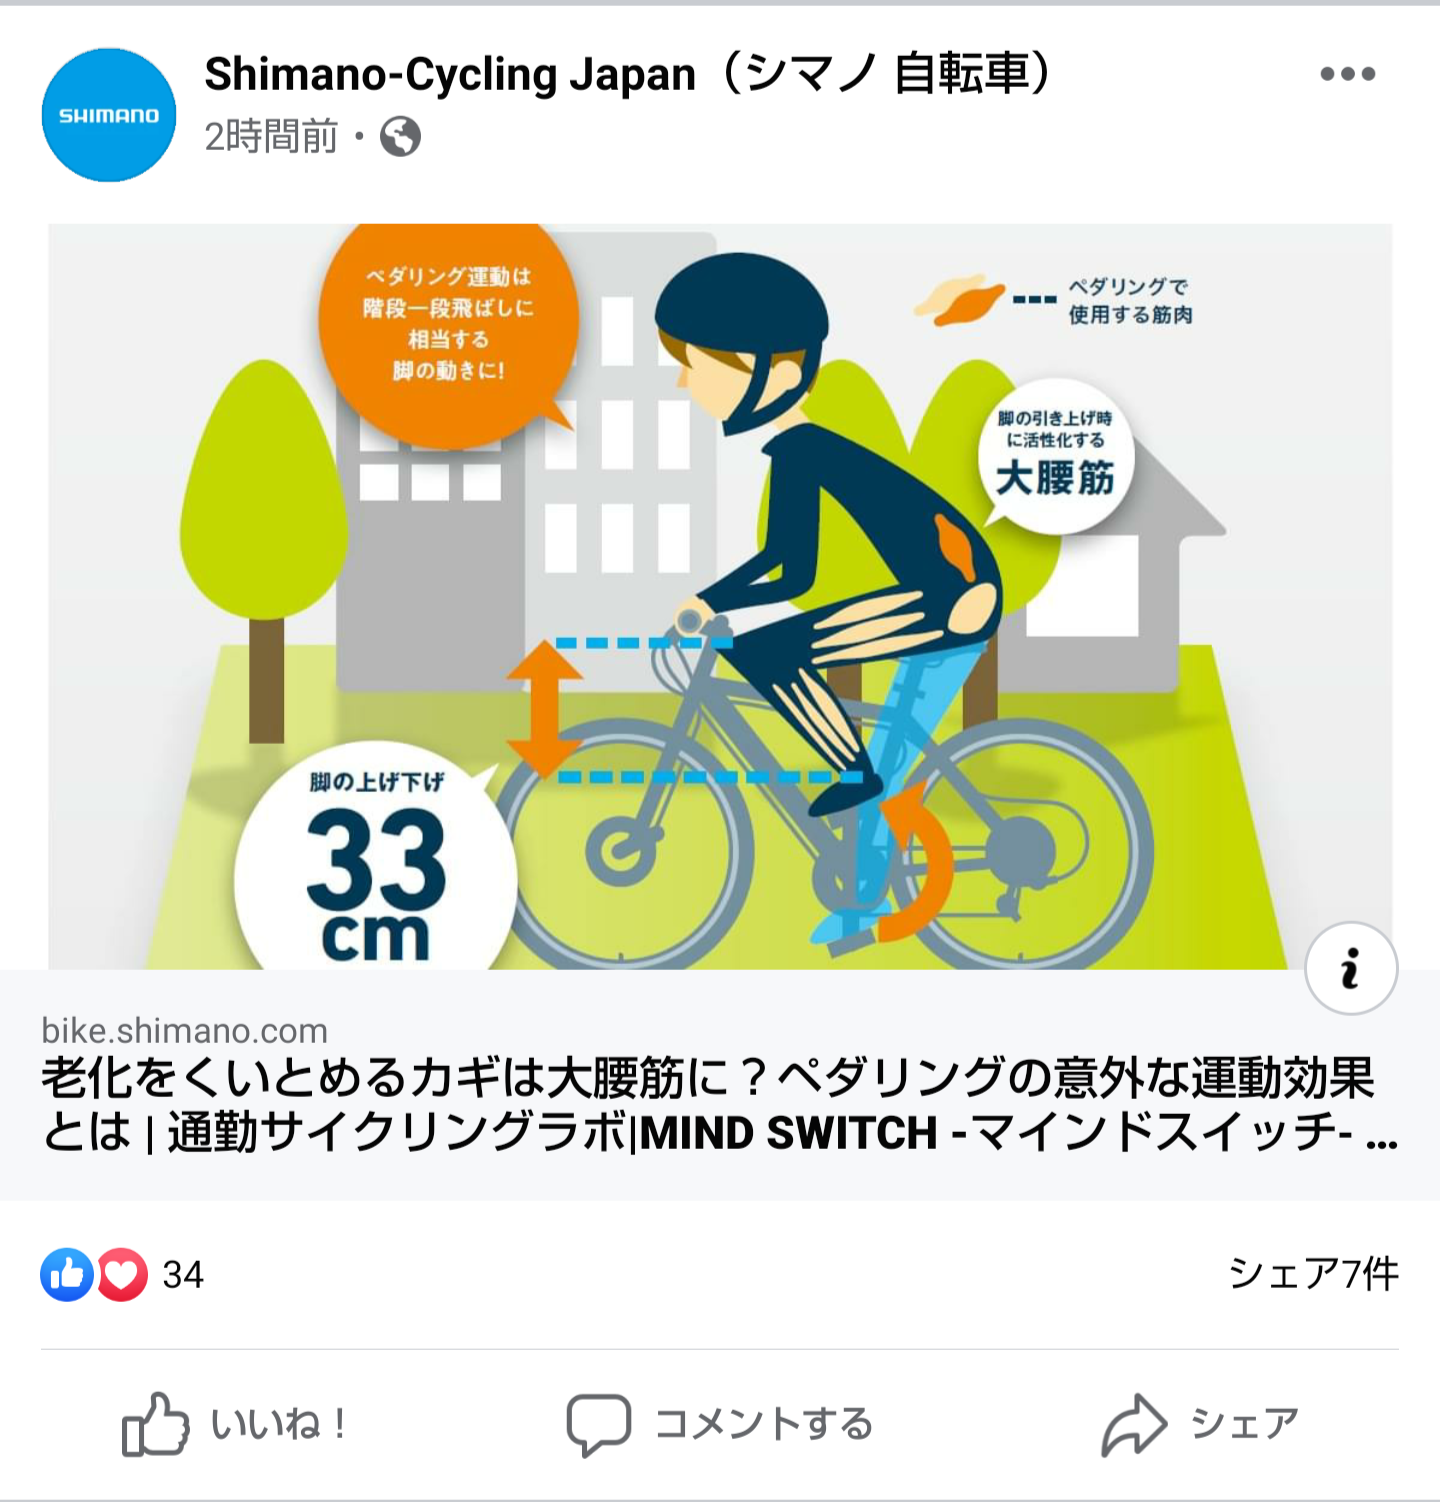 https://bike.shimano.com/ja-jp/mindswitch/lab/32/